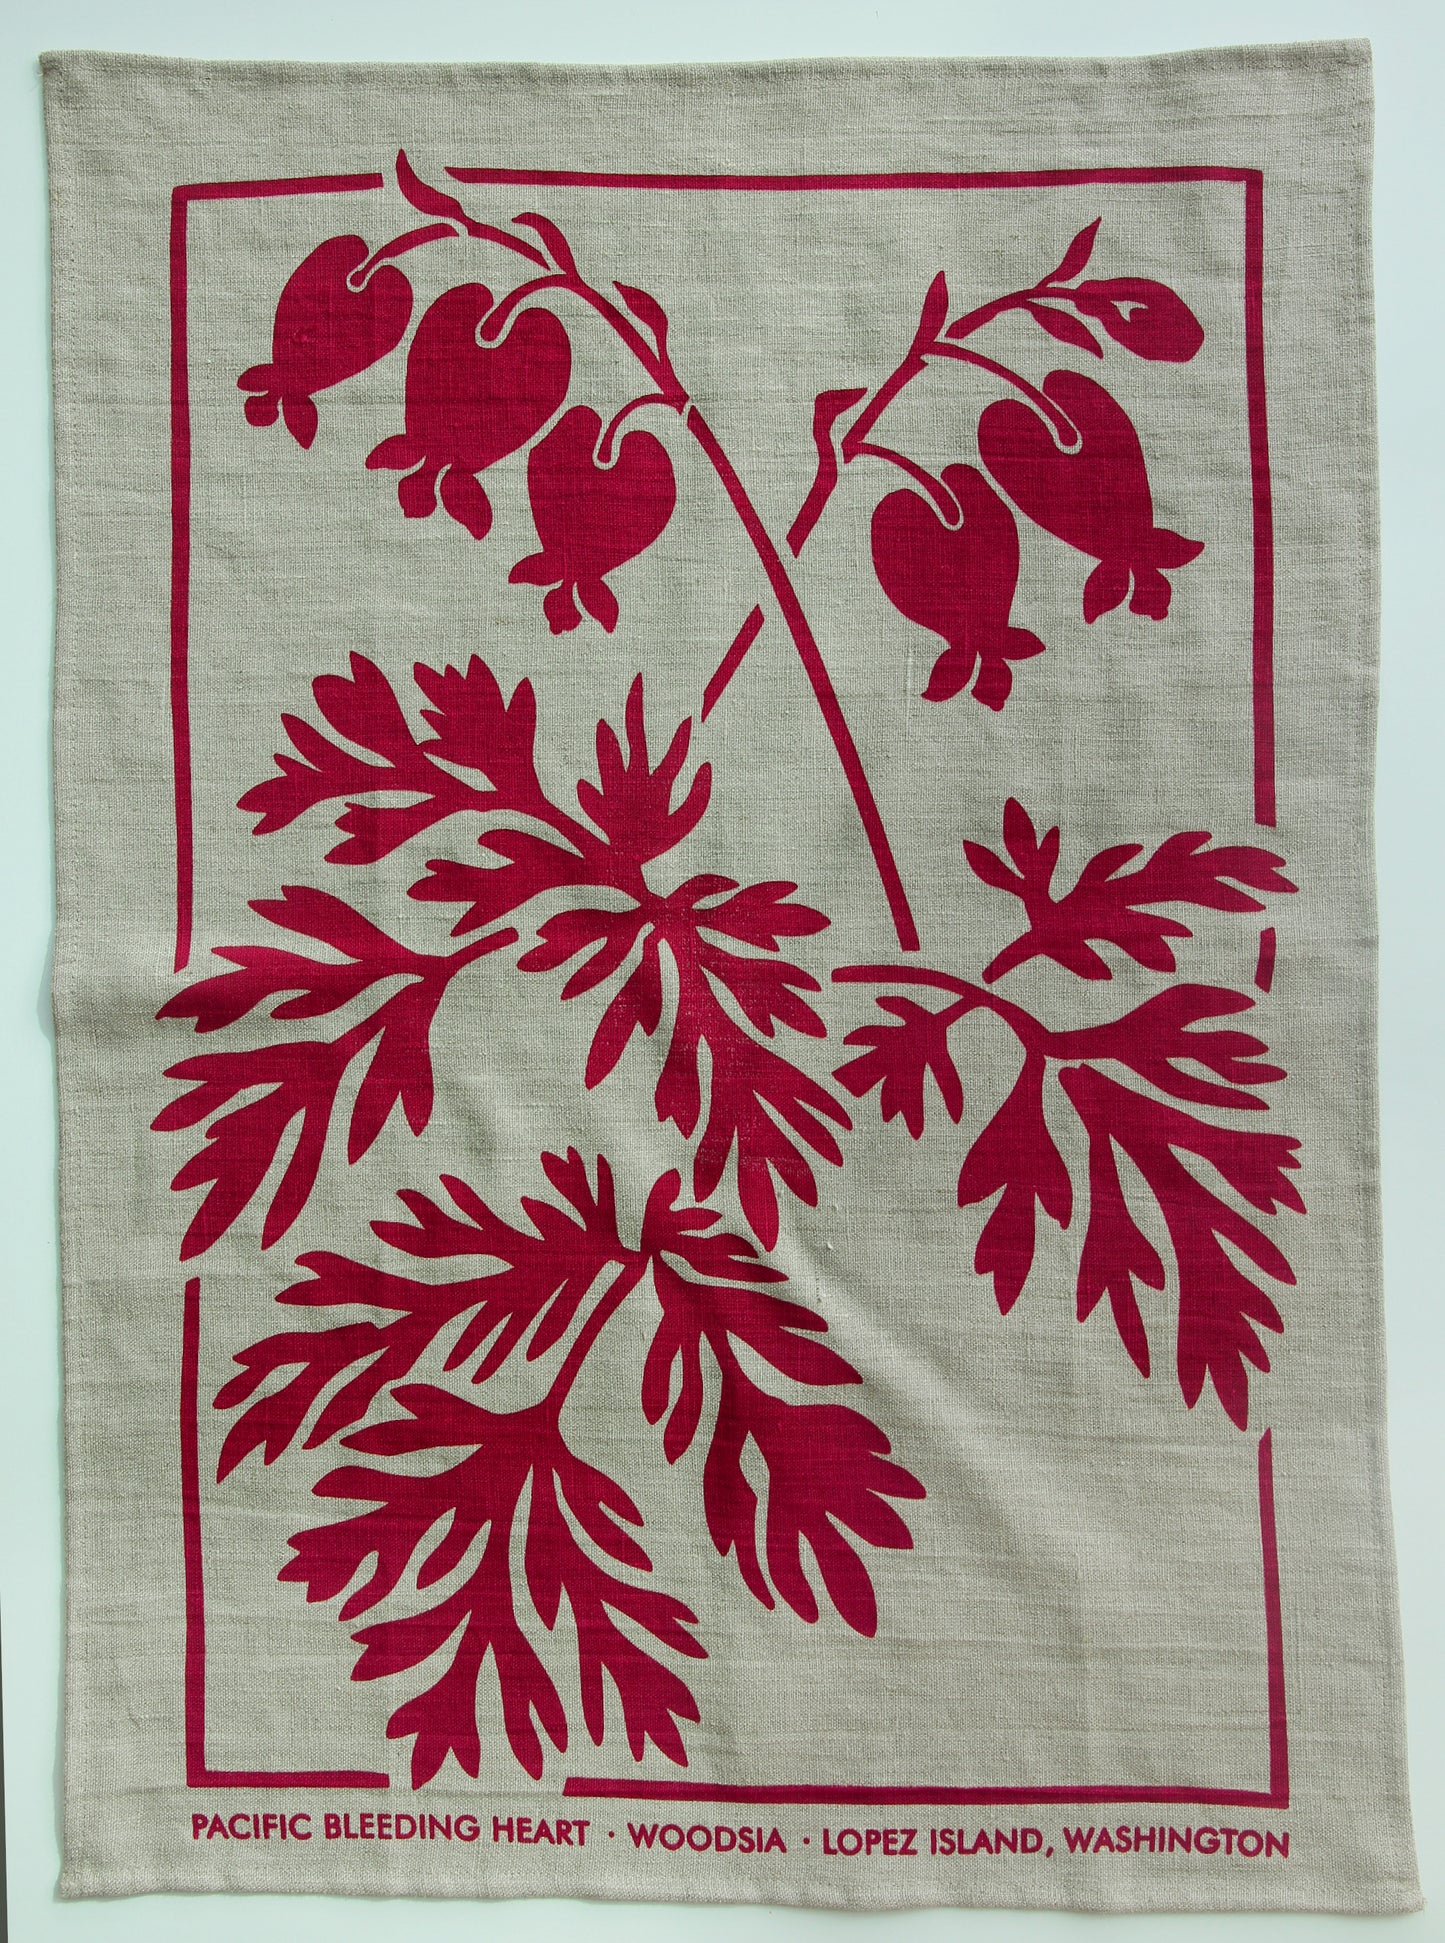 Bleeding Heart Kitchen Towel in Fuchsia on Natural Linen